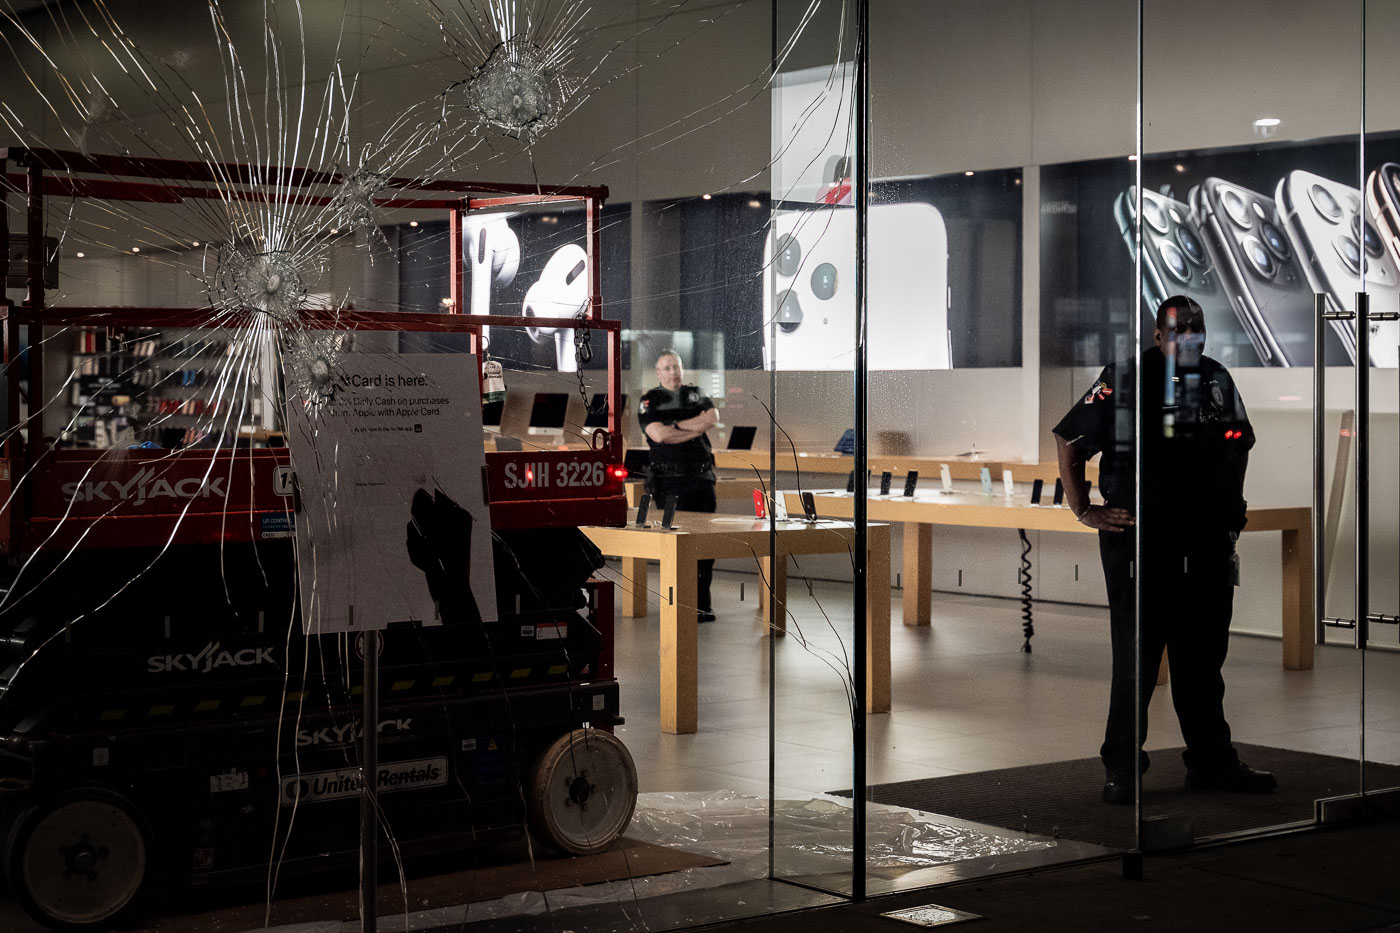 Private security patrols Apple store behind broken window